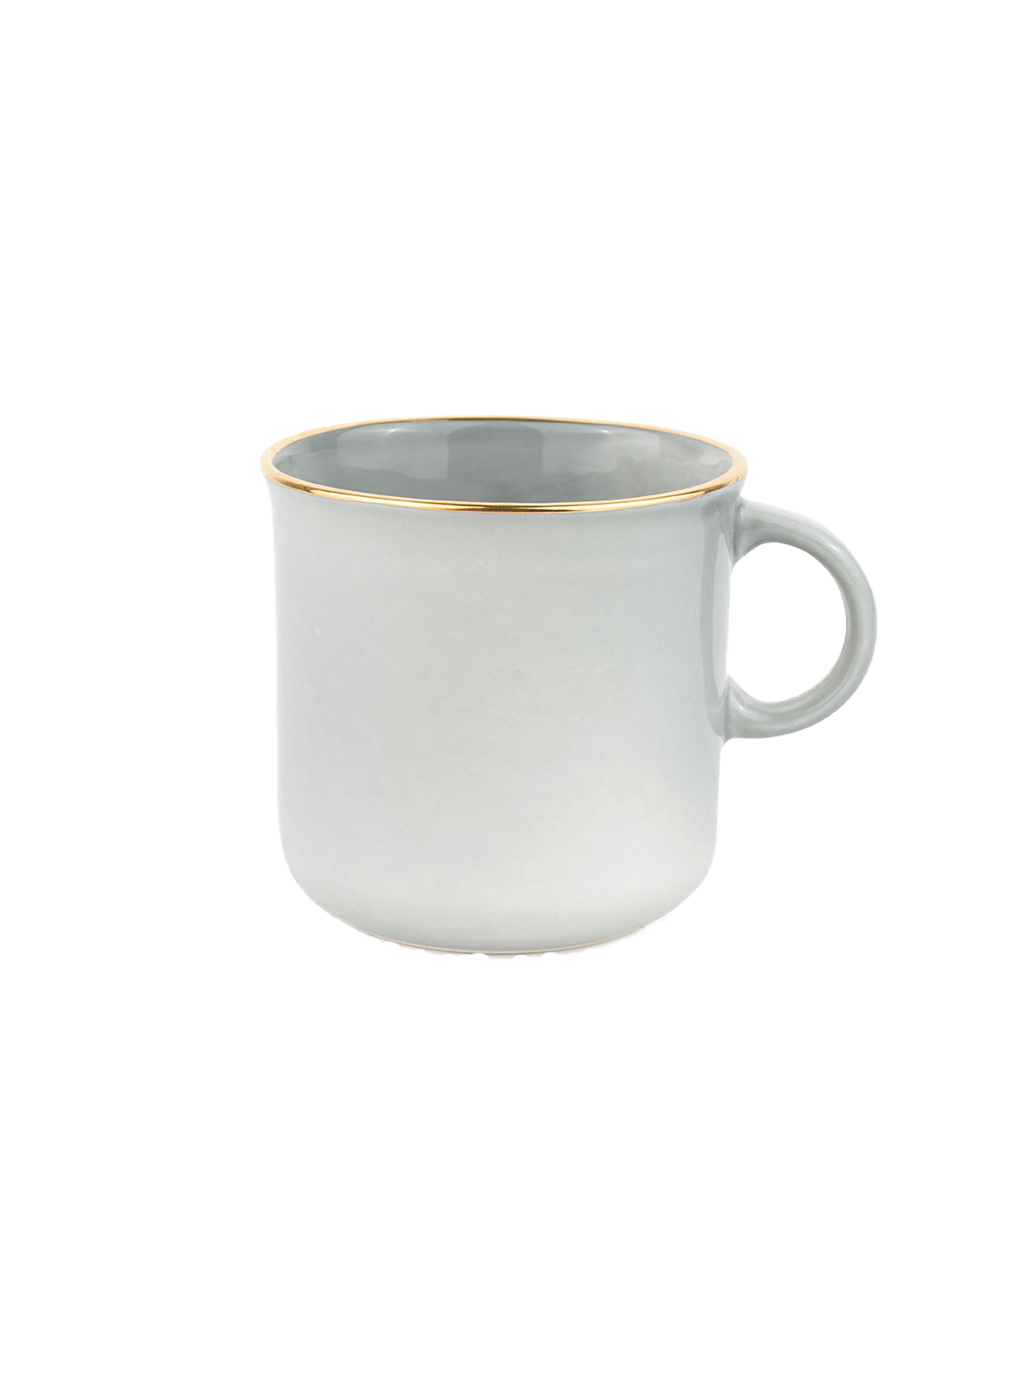 hand-made ceramic mug with gilding